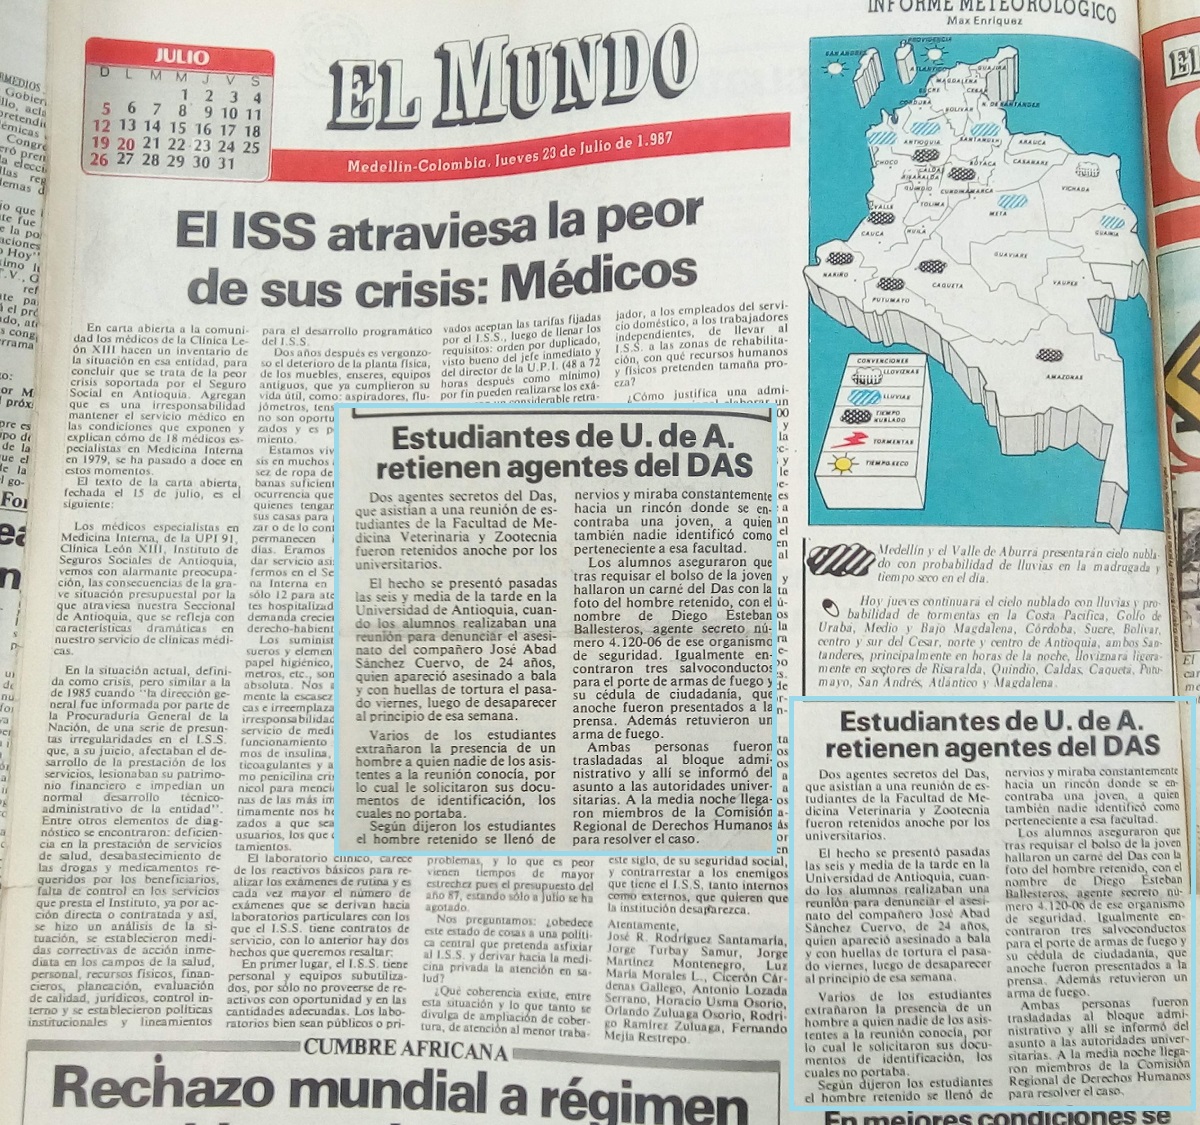 Fotografía tomada de la edición del 23 de julio de 1987 del periódico El Mundo